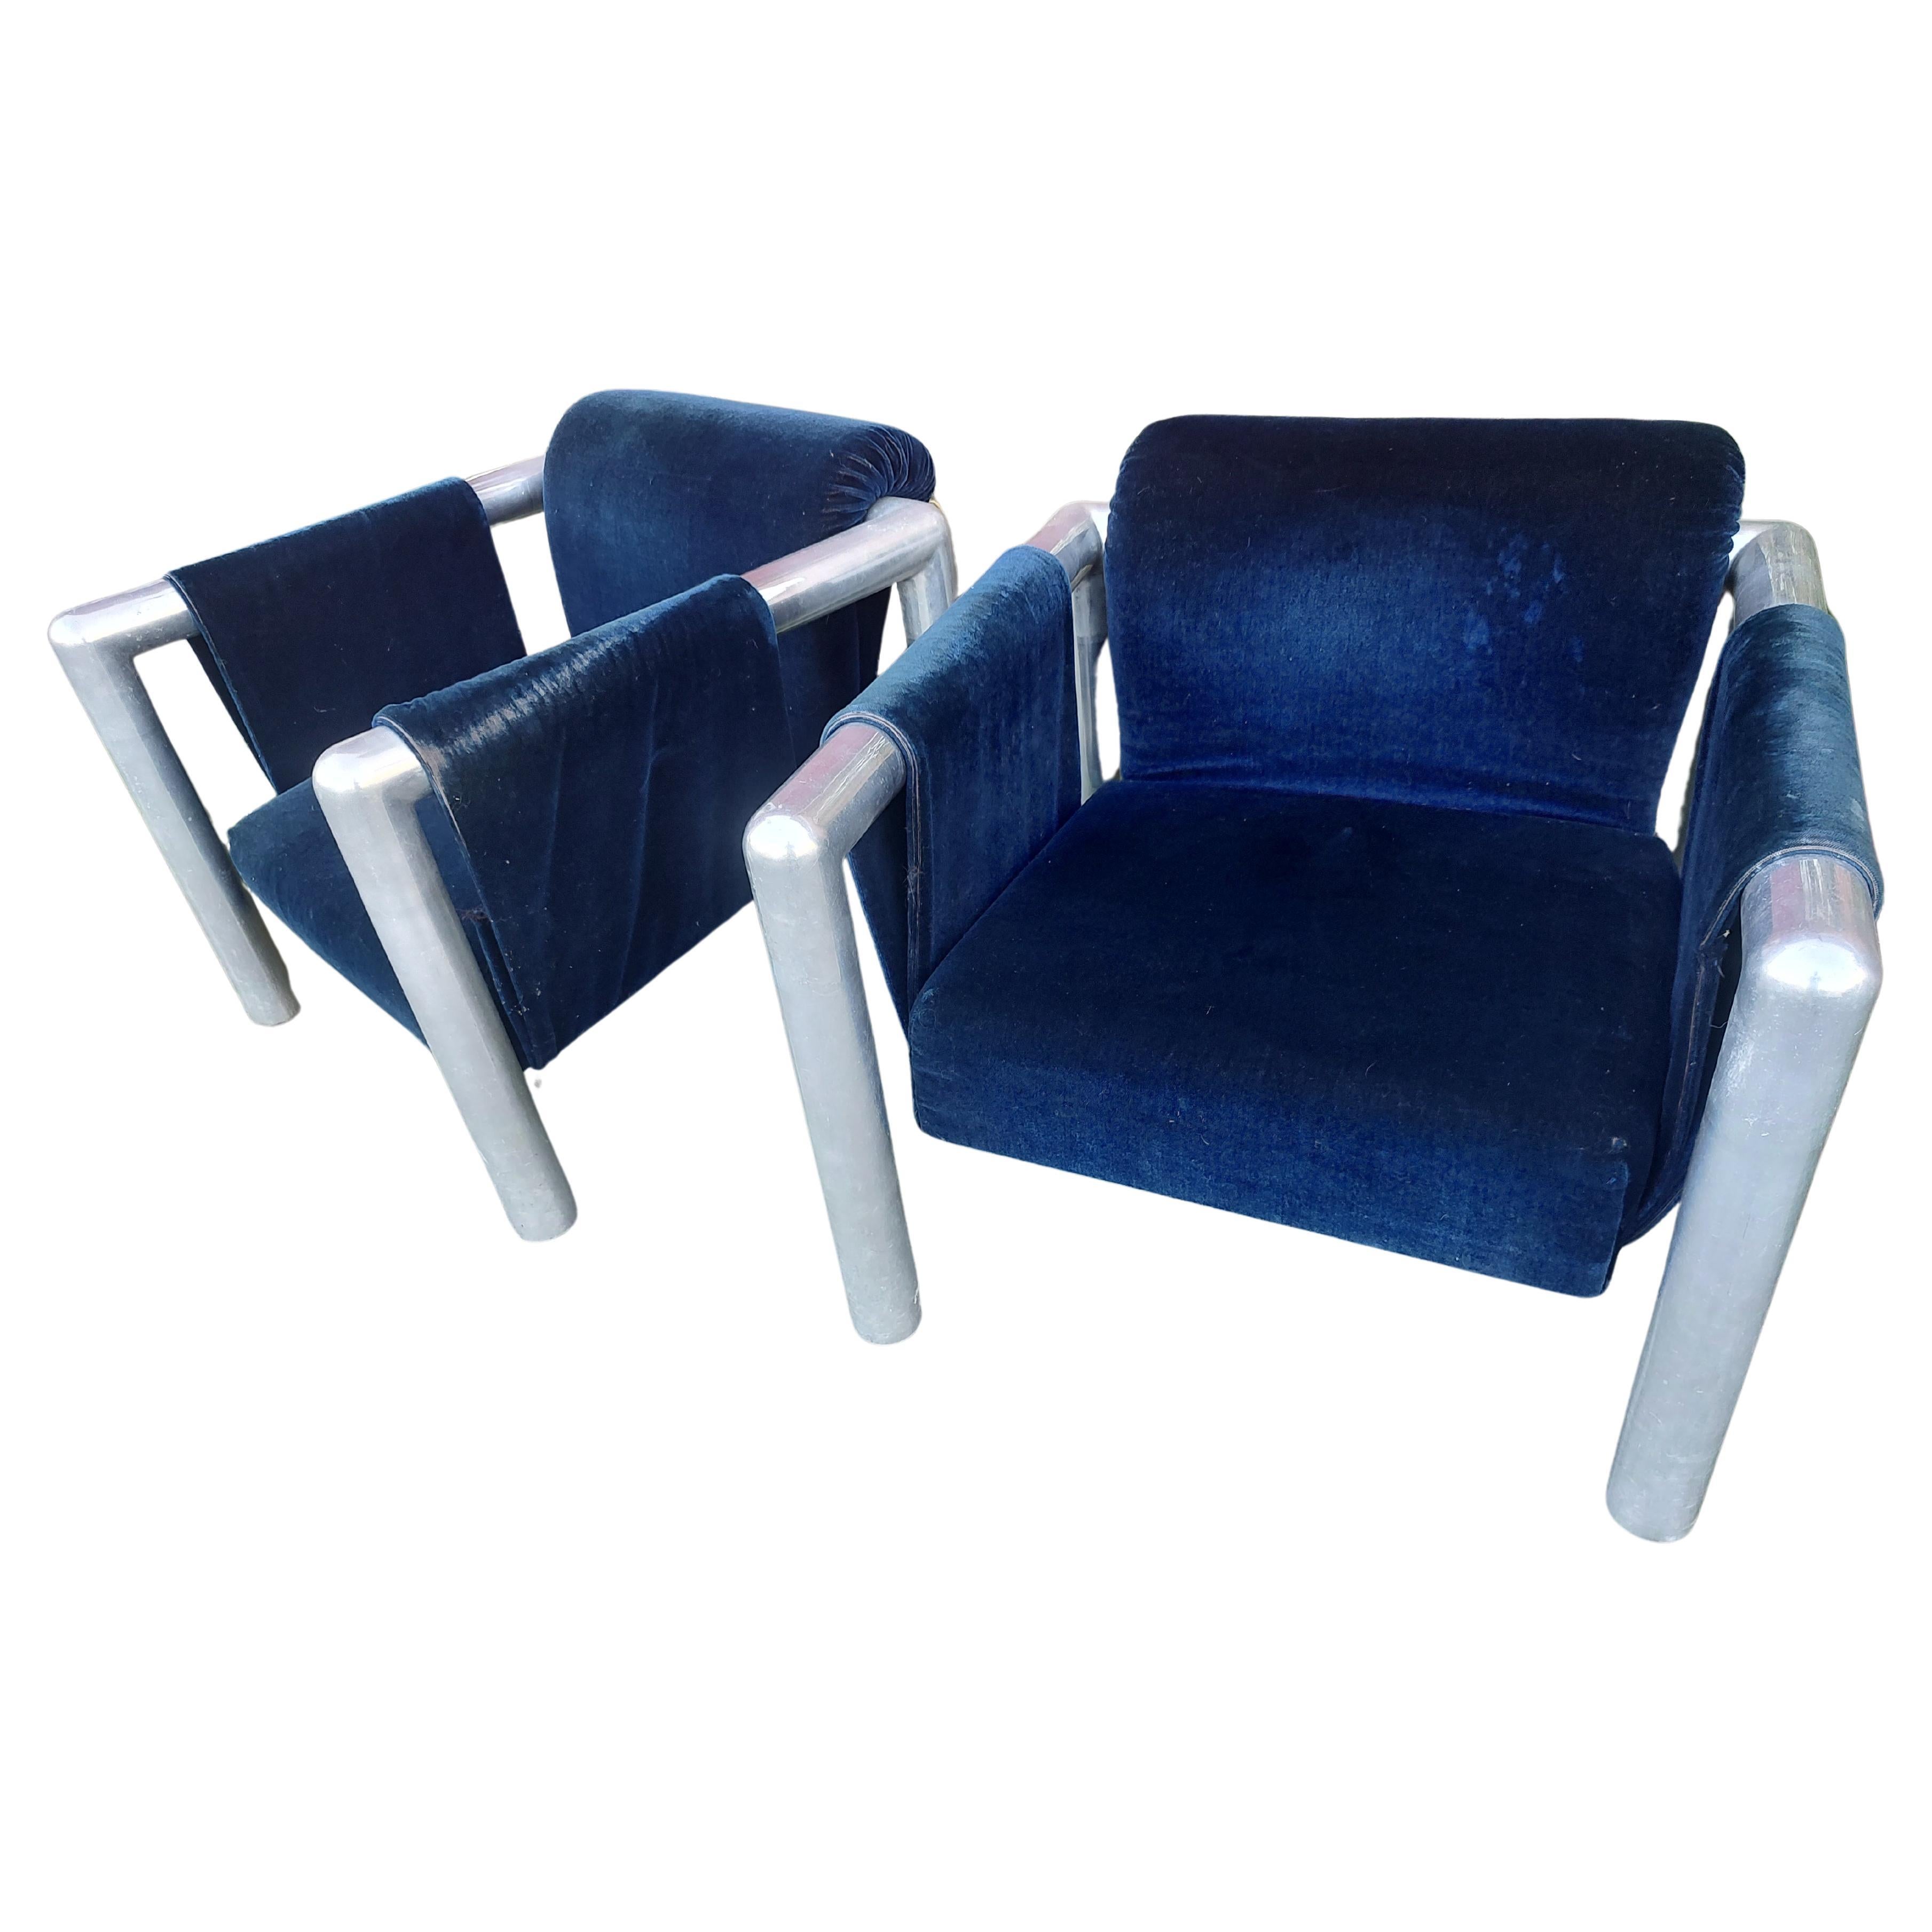 Fabelhaftes Paar Sling-Stühle von John Mascheroni. Der Stoff ist original und in schlechtem Zustand, er ist zerrissen und muss erneuert werden. Ich muss sagen, dass der dunkelblaue Samt sehr gut zu diesen Stühlen passt. Aluminium ist großartig, groß